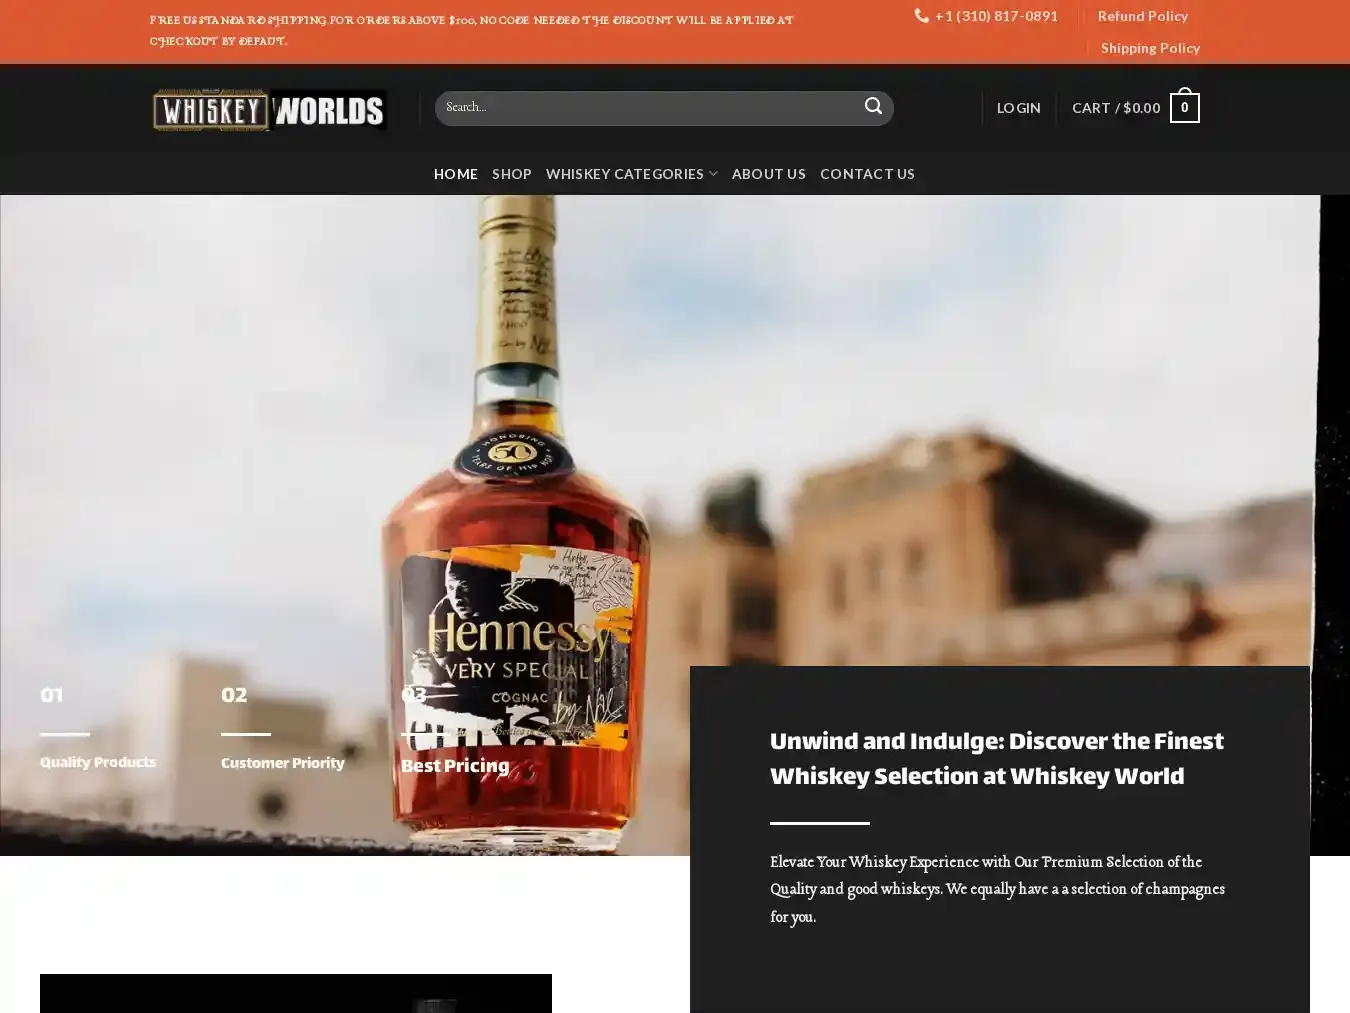 Whiskeyworlds.com Fraudulent Whisky website.